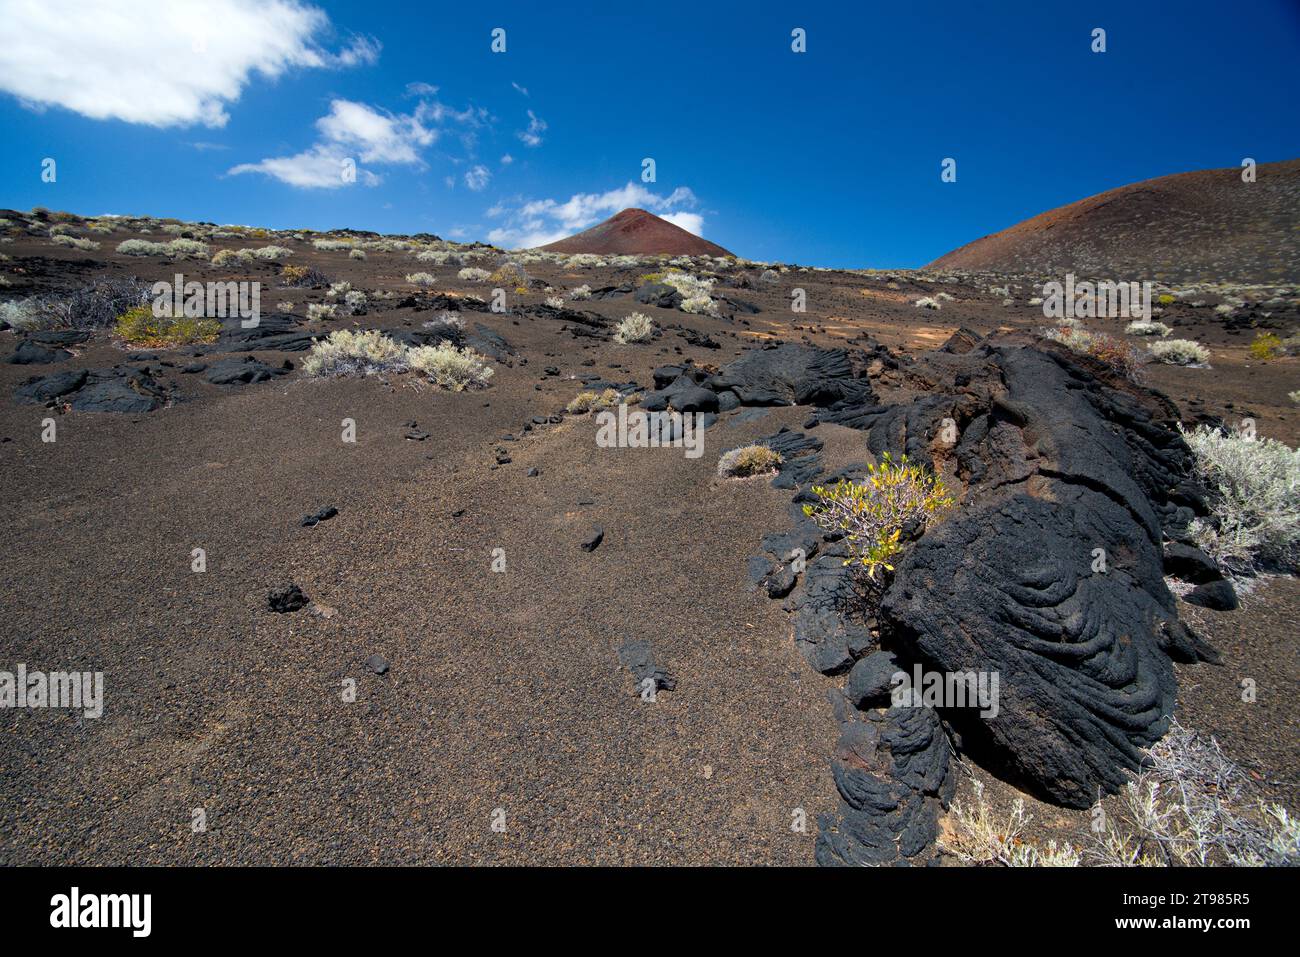 volcanic landscape of the Island of El Hierro, Canary Islands. paisaje volcánico de la Isla de El Hierro, Canarias Stock Photo